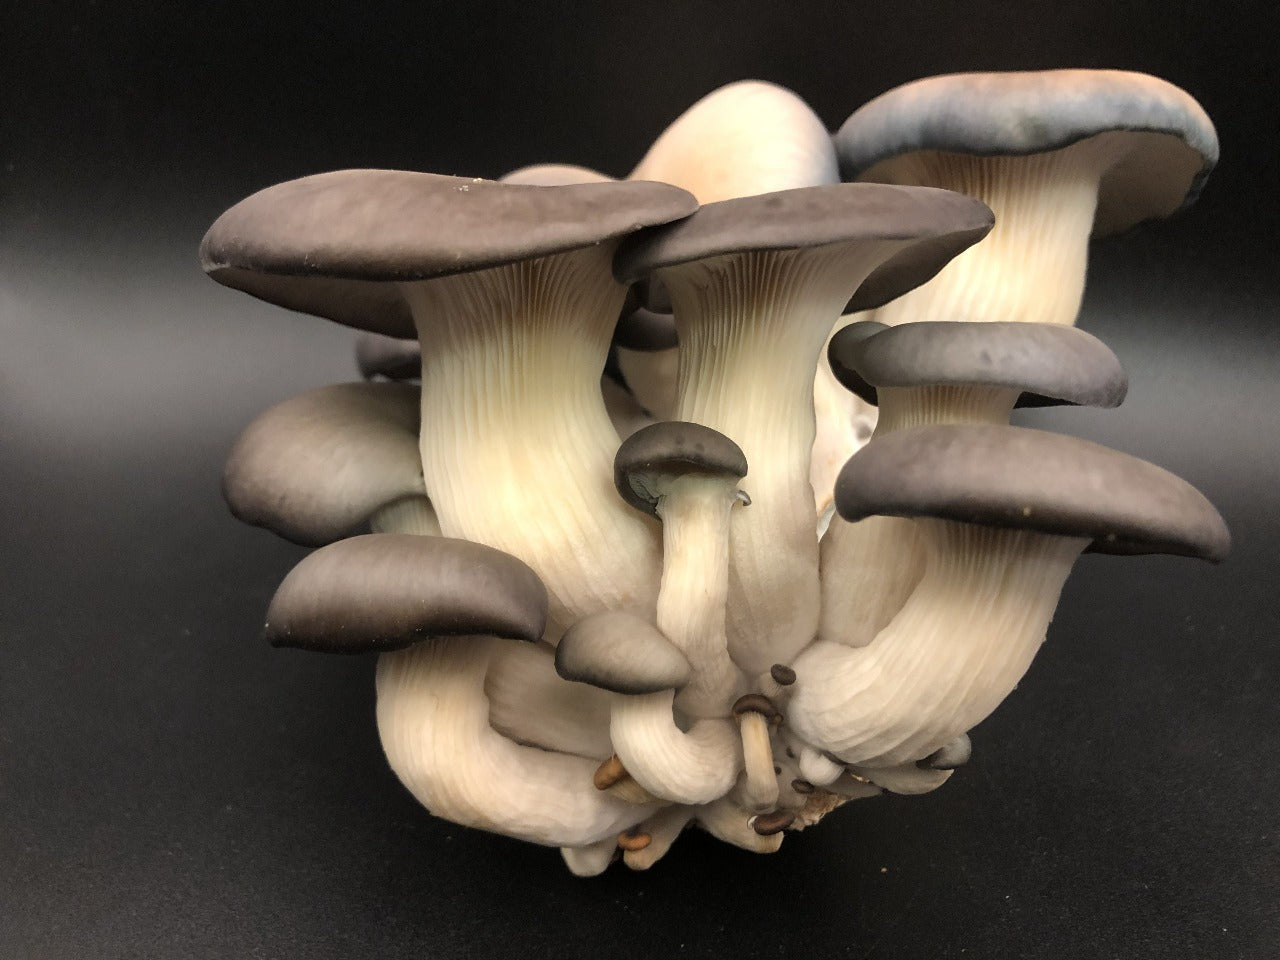 Kit d’auto-culture de champignons Pleurote